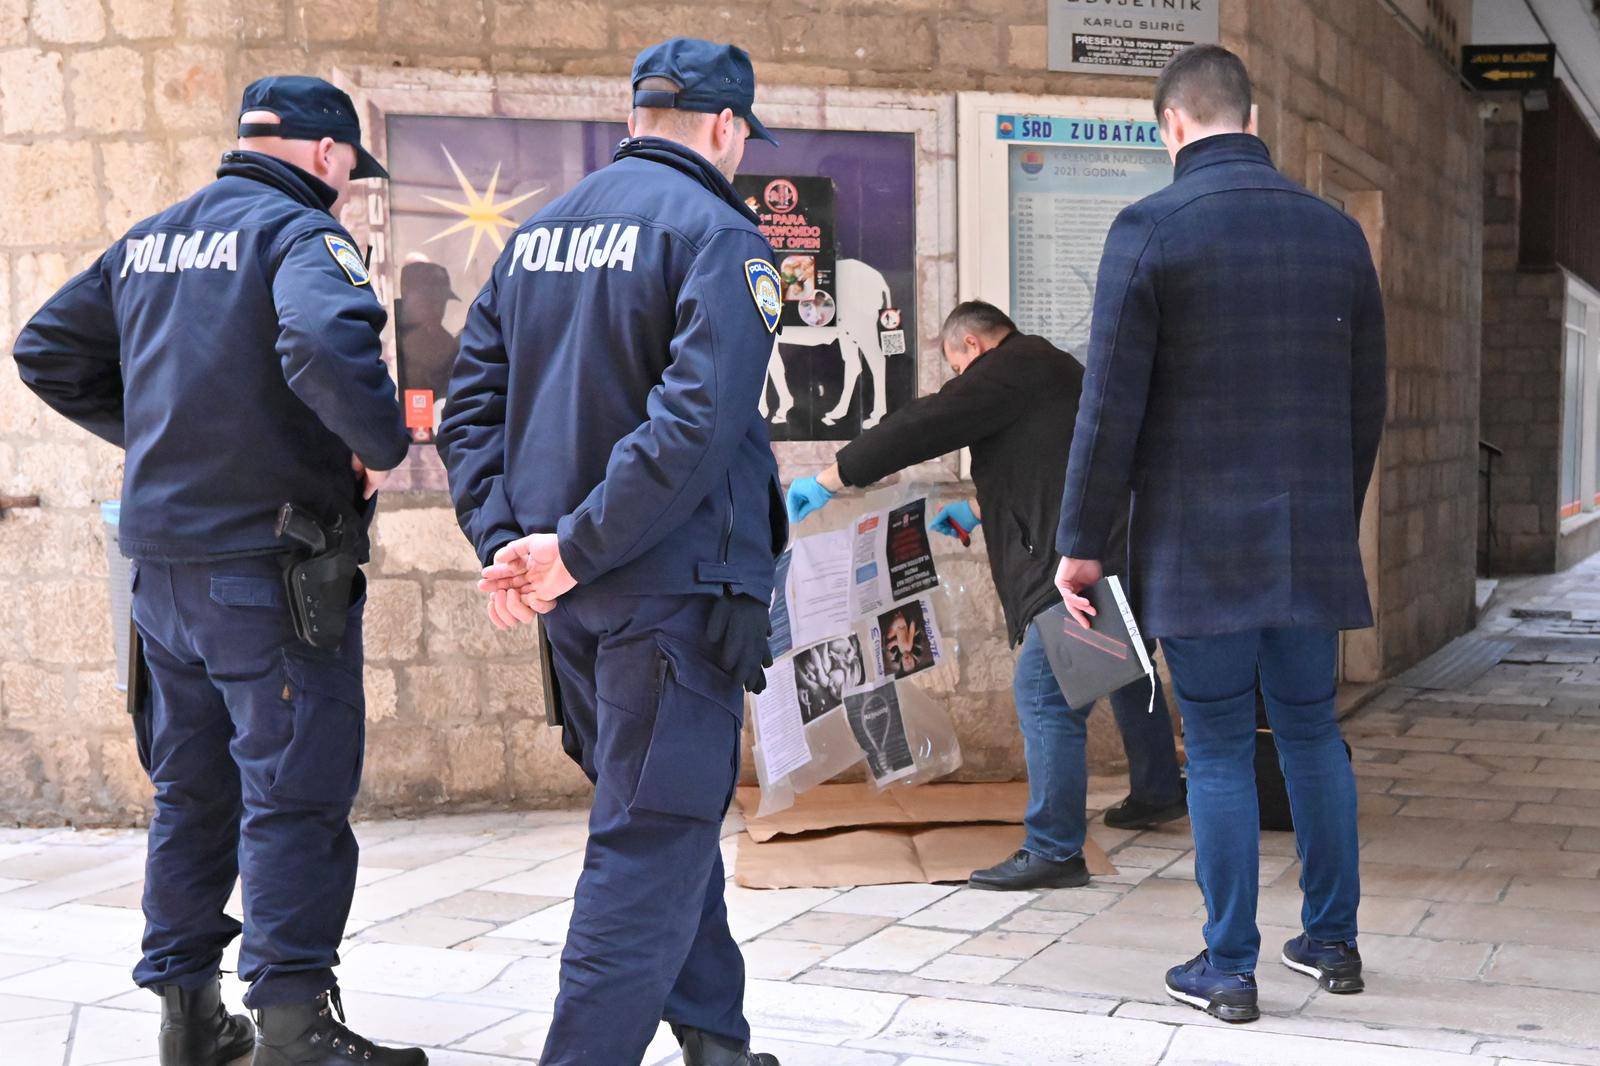 Zadar: Policija provodi očevid zbog plakata s omčom za vješanje i natpisom anemični